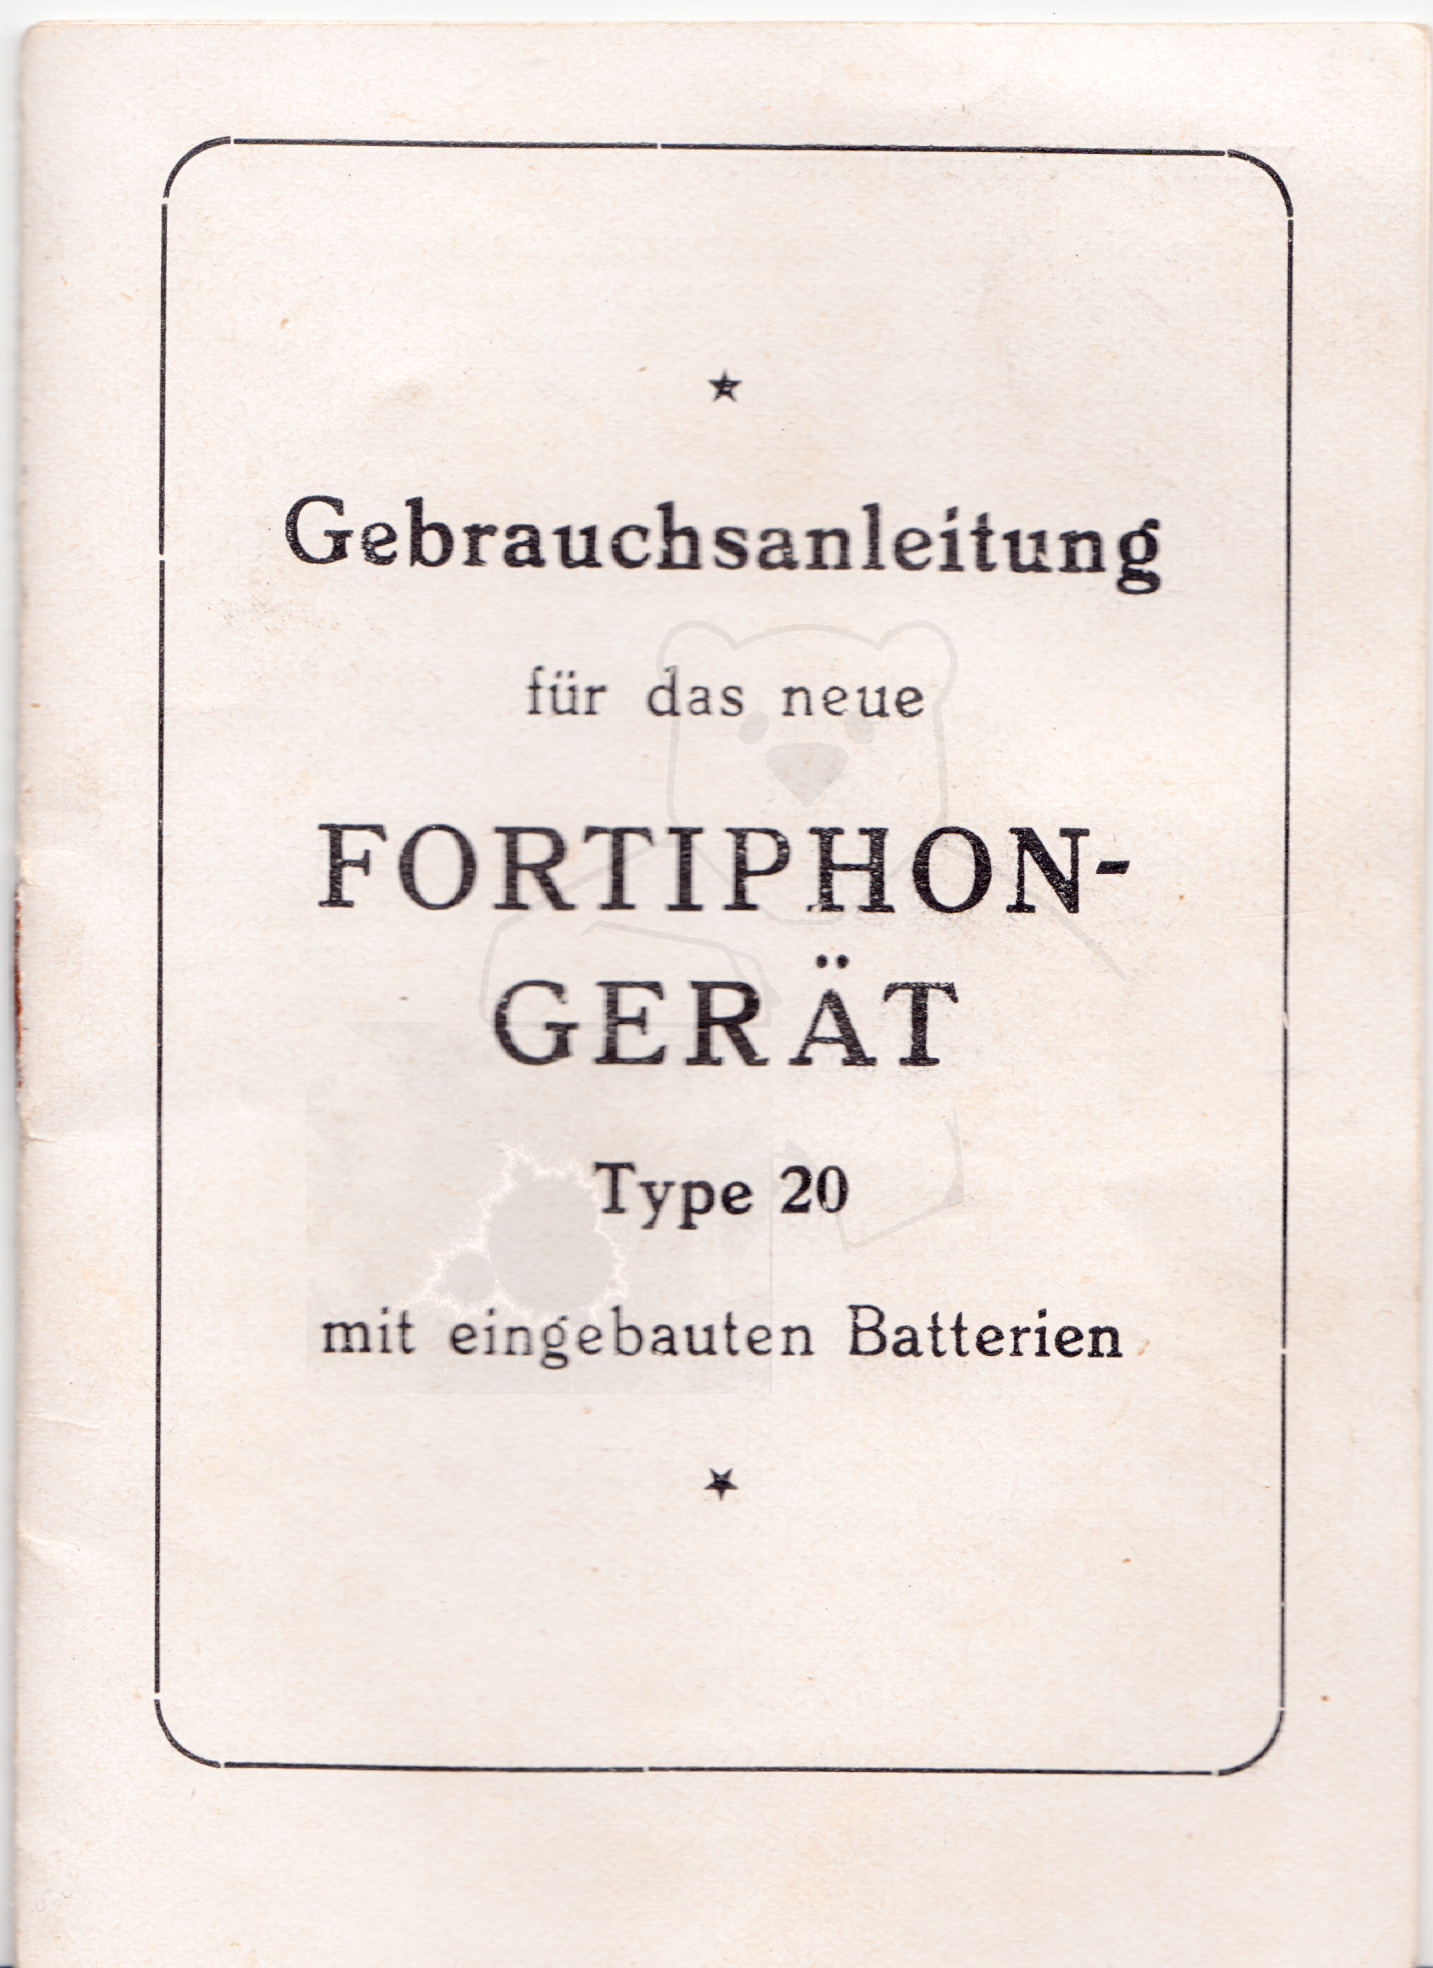 Hörgerät "Fortiphone Type 20", ca. 1949, Anleitung Seite 1